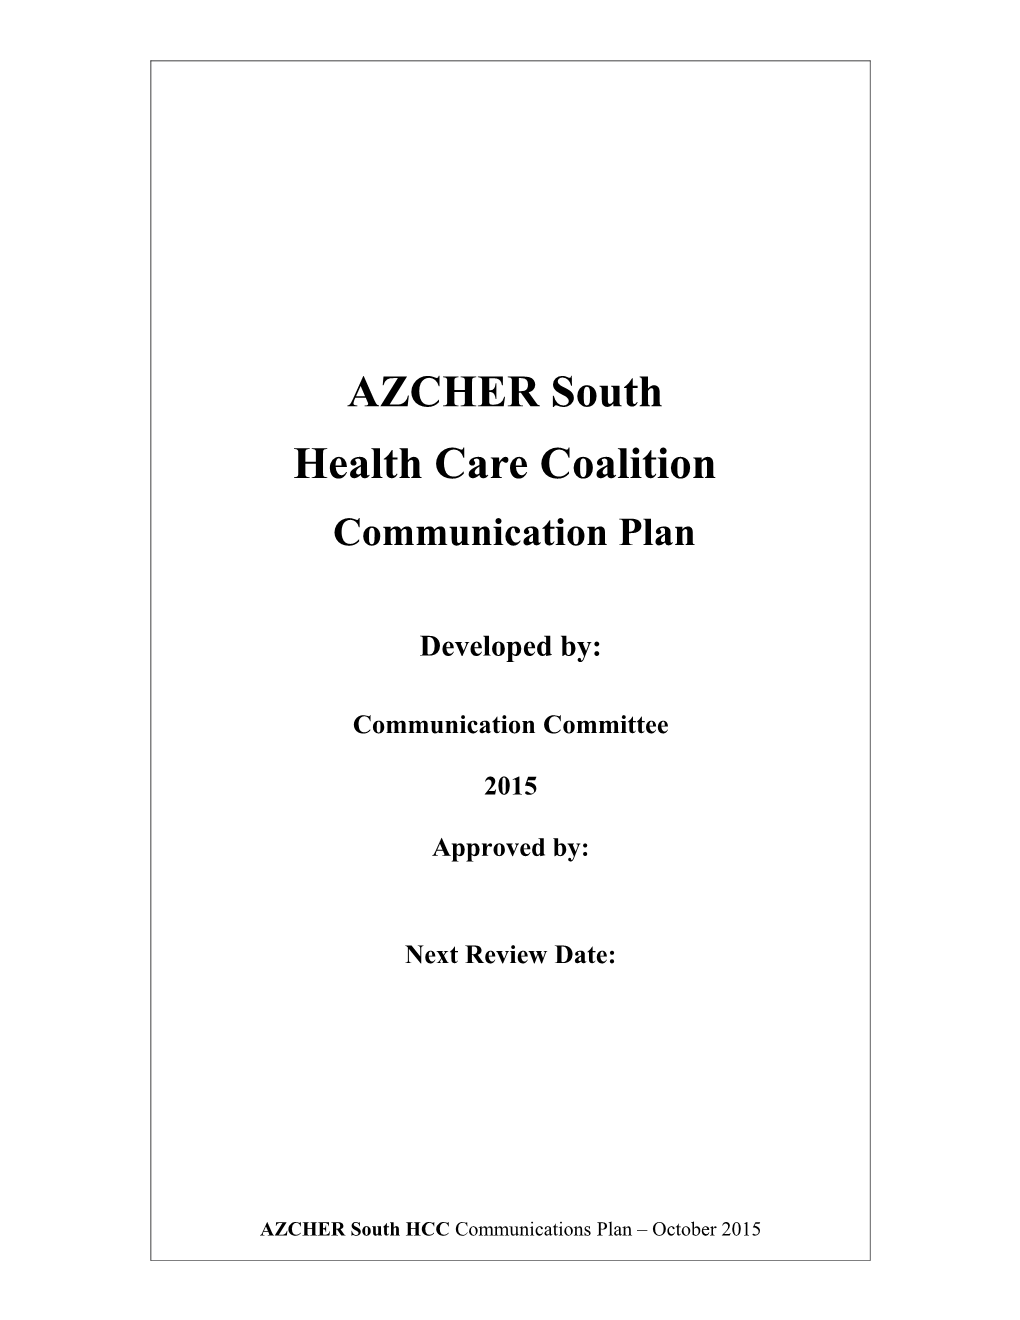 AZCHER-South Hcccommunication Plan